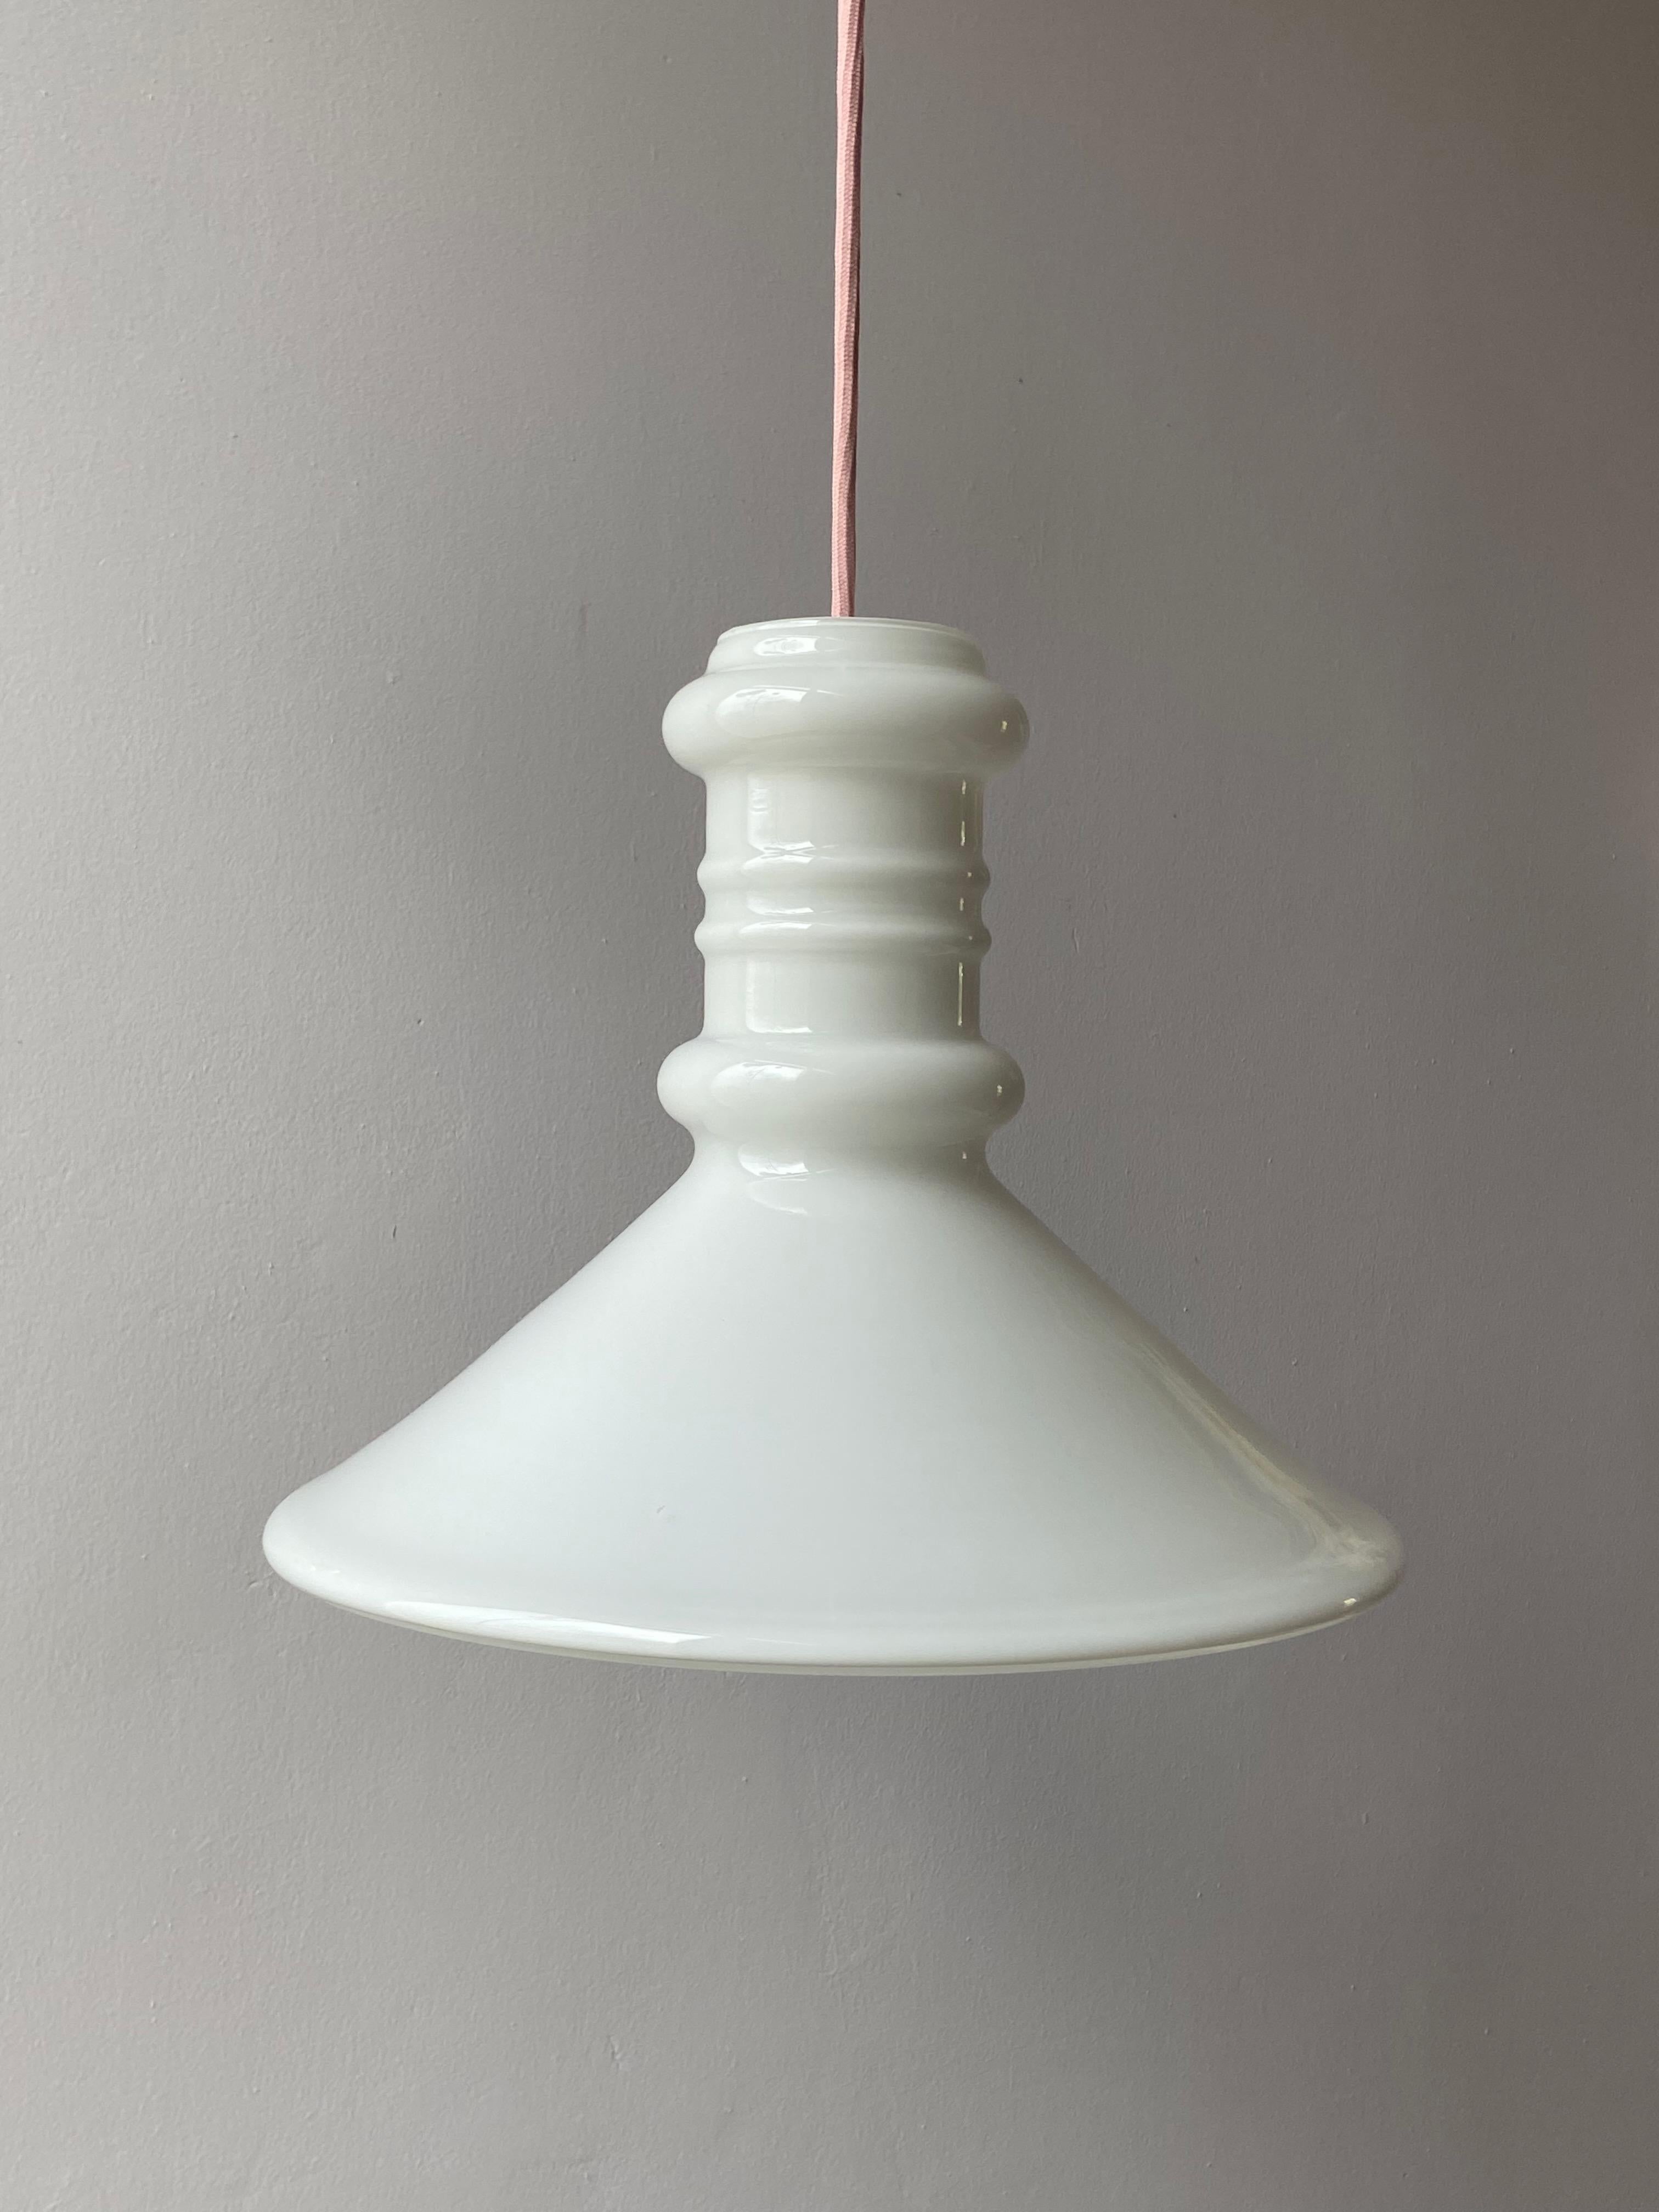 Glass Sidse Werner Large Apotheker Pendant Lamp by Holmegaard, Denmark, 1980s